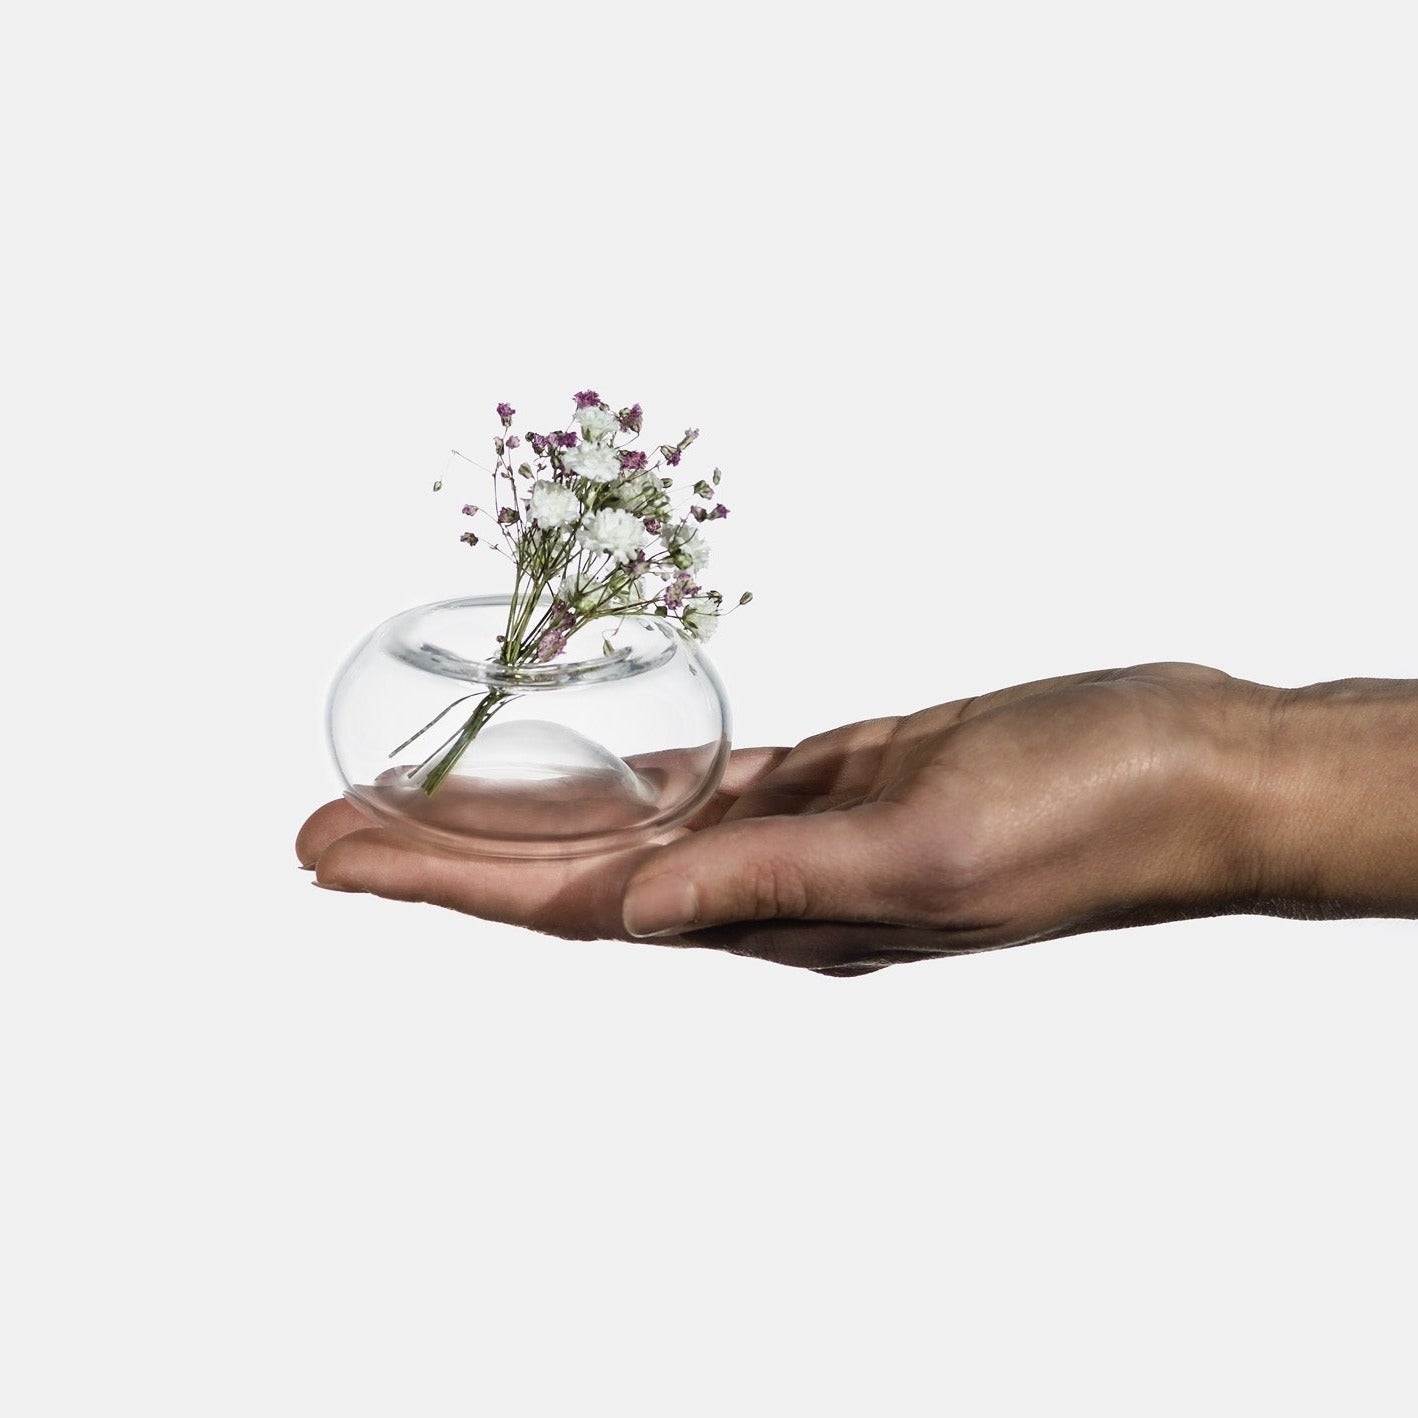 Cinini, vasi piccoli per fiori in vetro